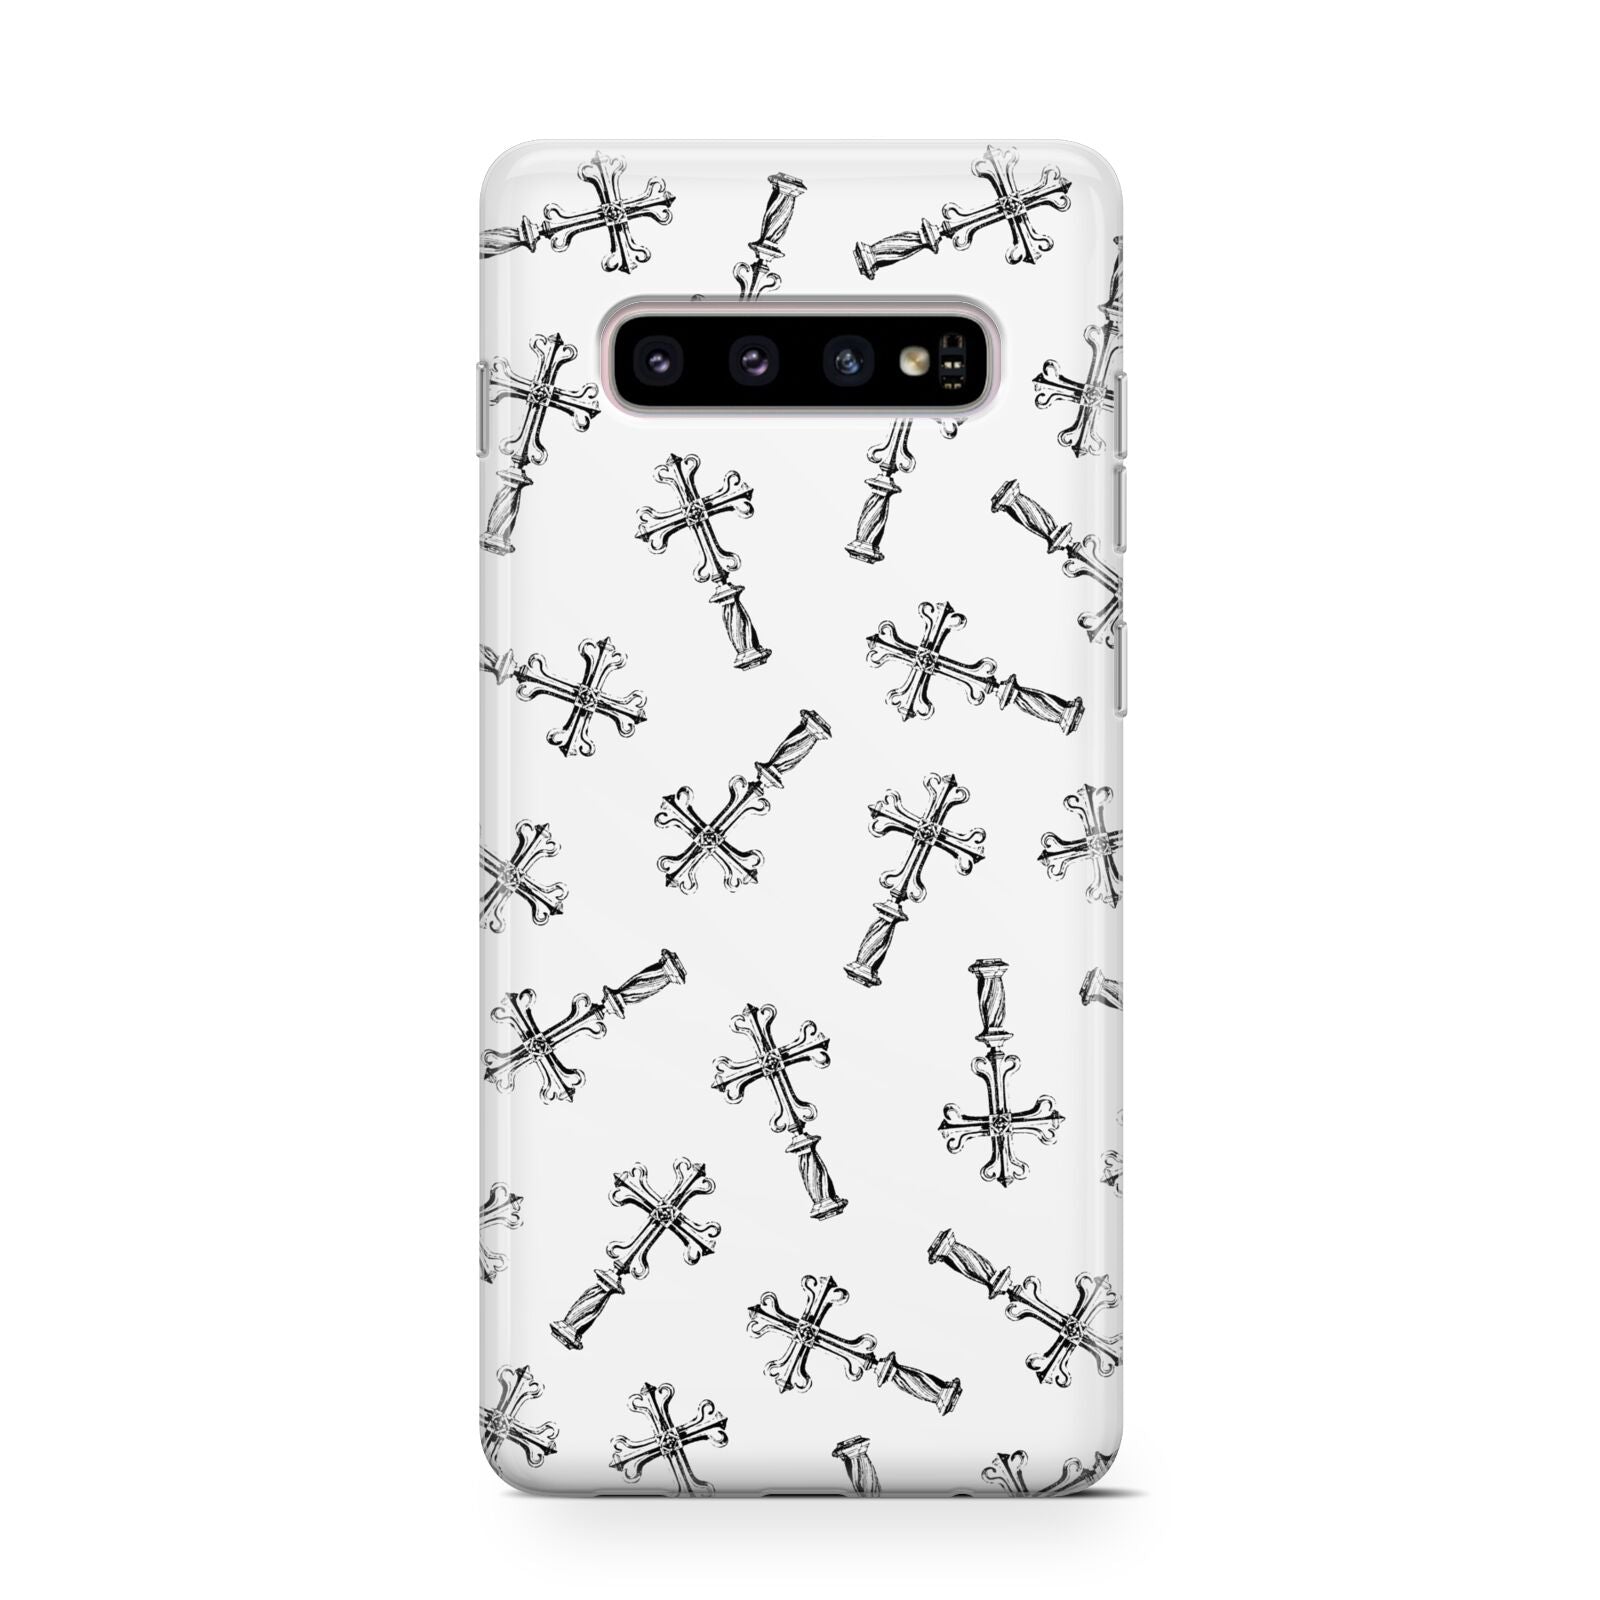 Monochrome Crosses Samsung Galaxy S10 Case